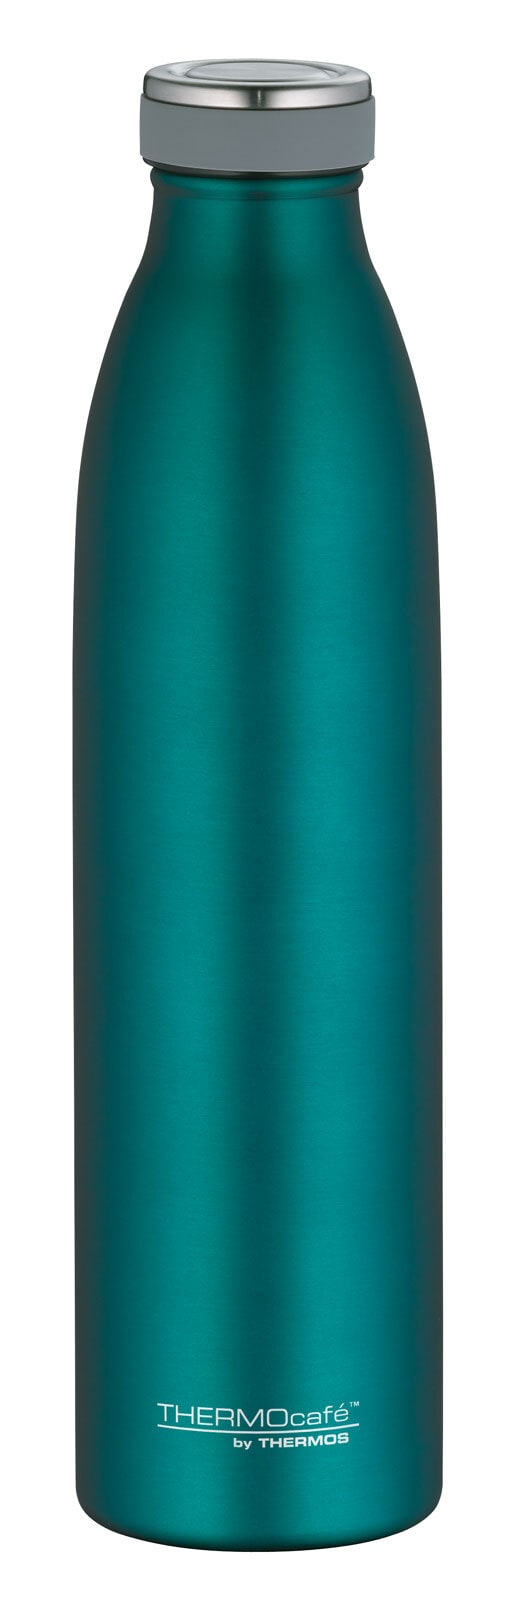 THERMOcafé by THERMOS Isolierflasche BOTTLE 750 ml Edelstahl grün matt